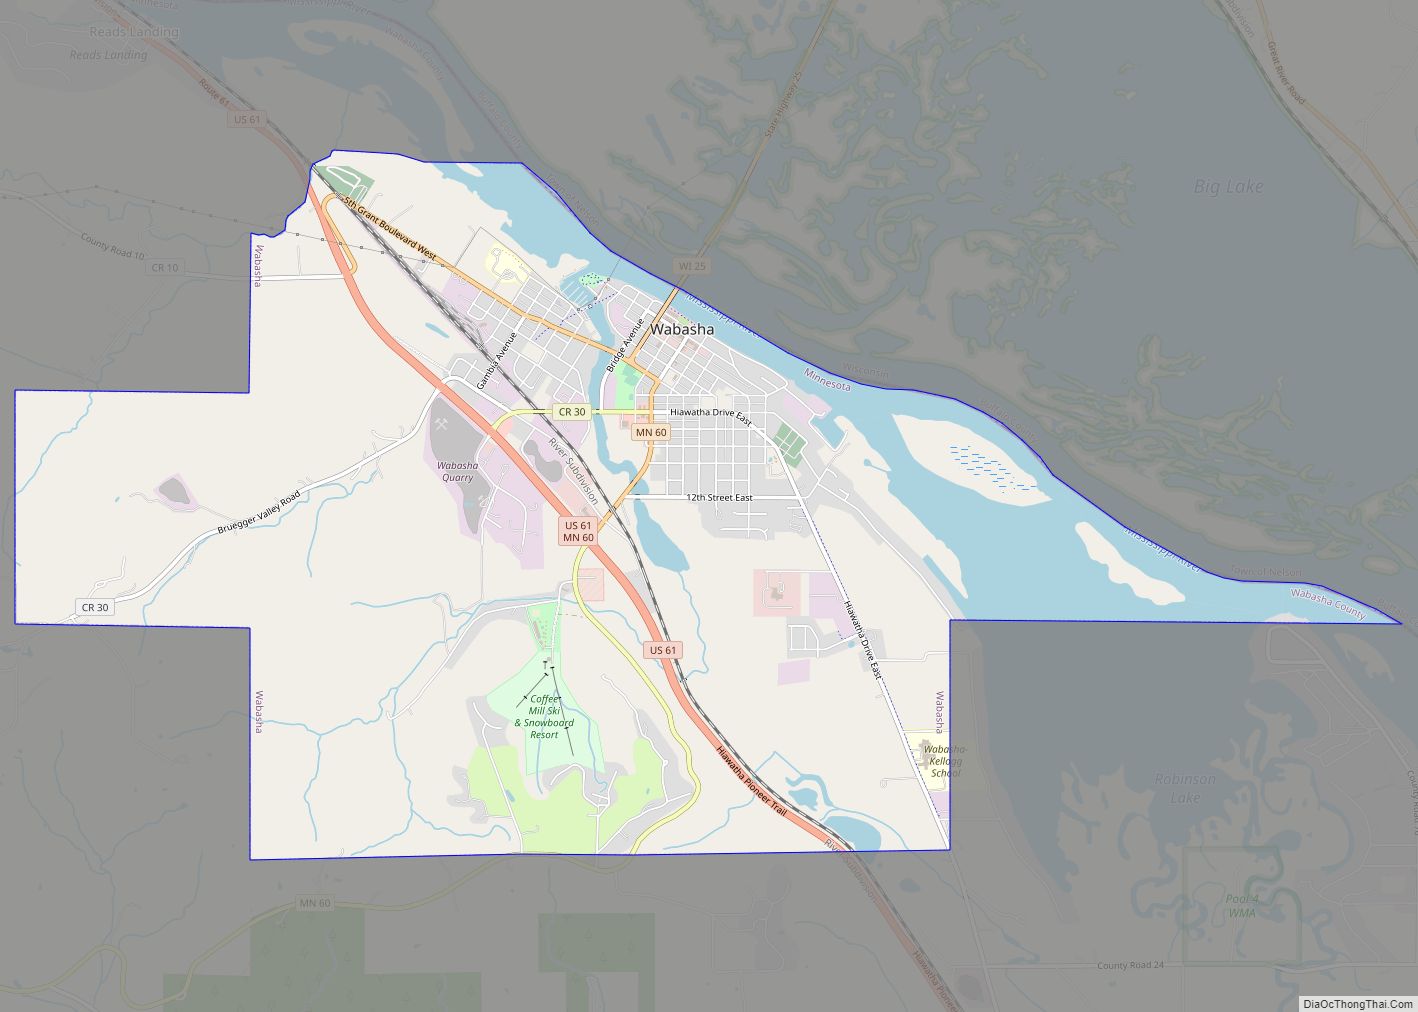 Map of Wabasha city